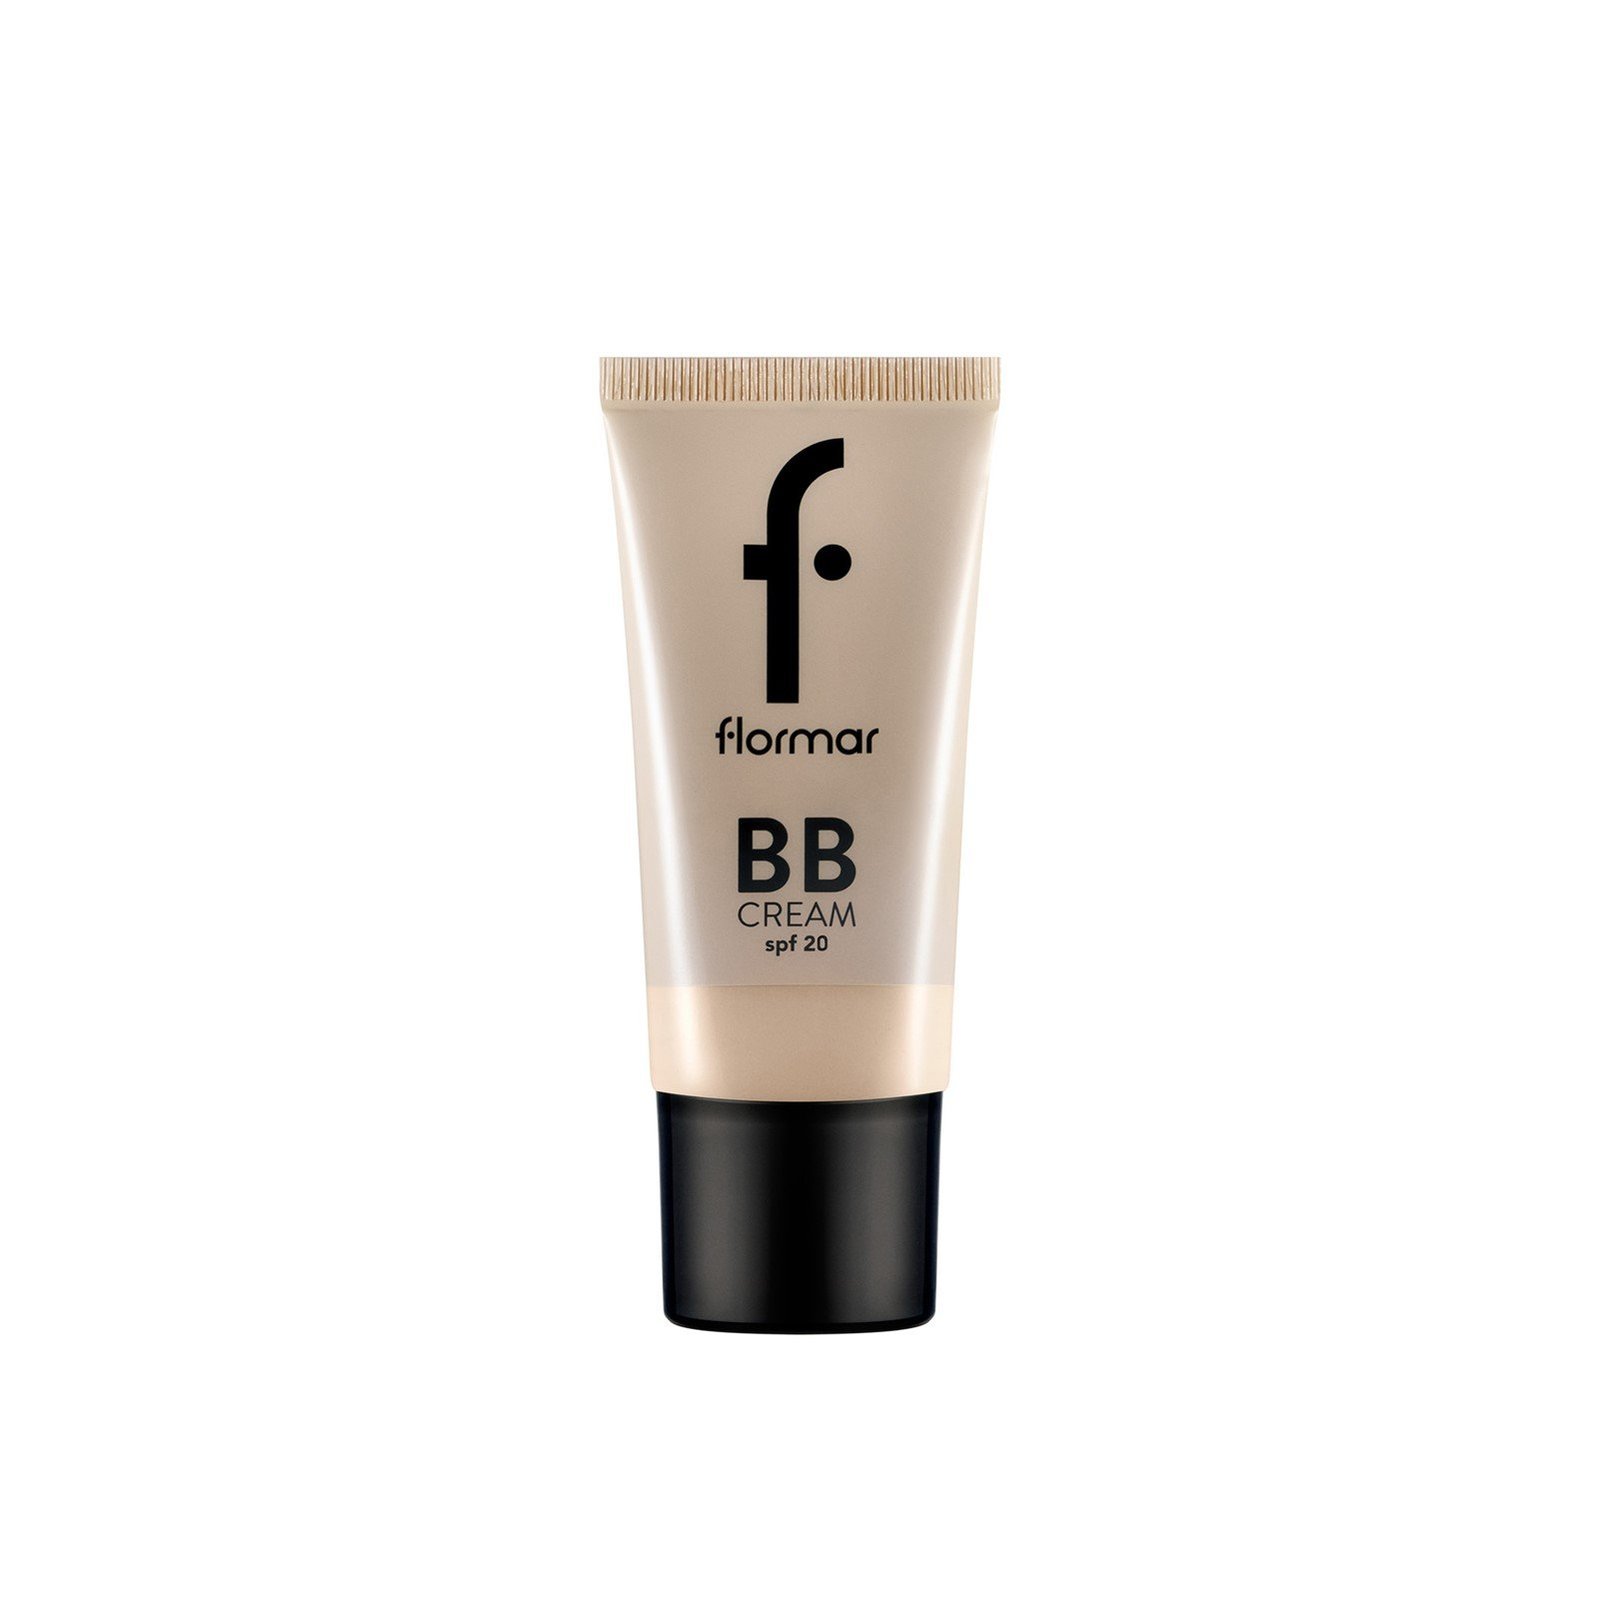 Flormar BB Cream SPF20 02 Fair/Light 35ml (1.18fl oz)